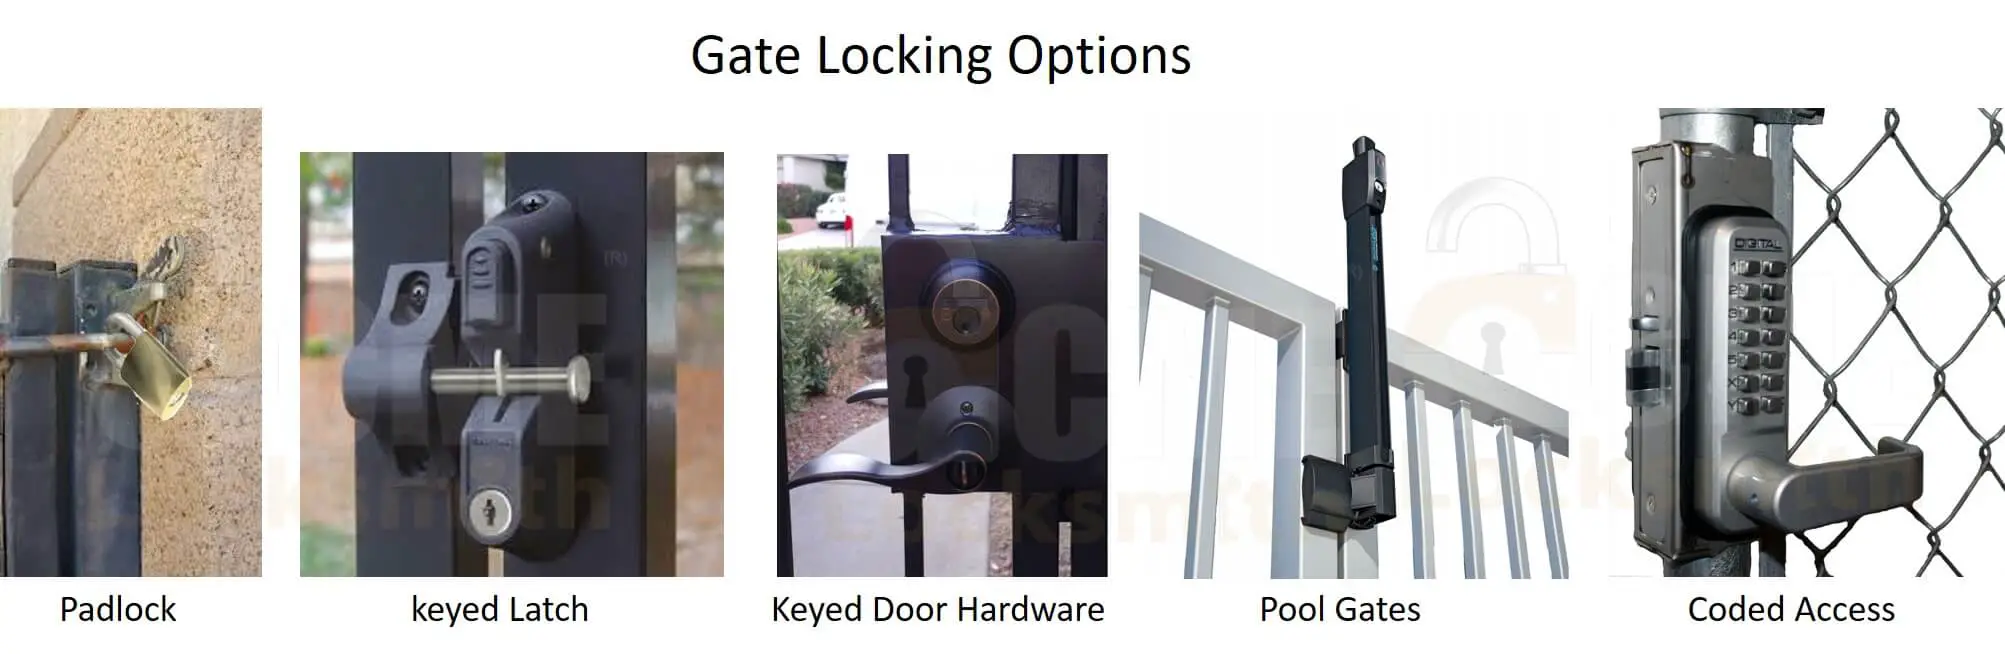 Ways to Lock a Gate